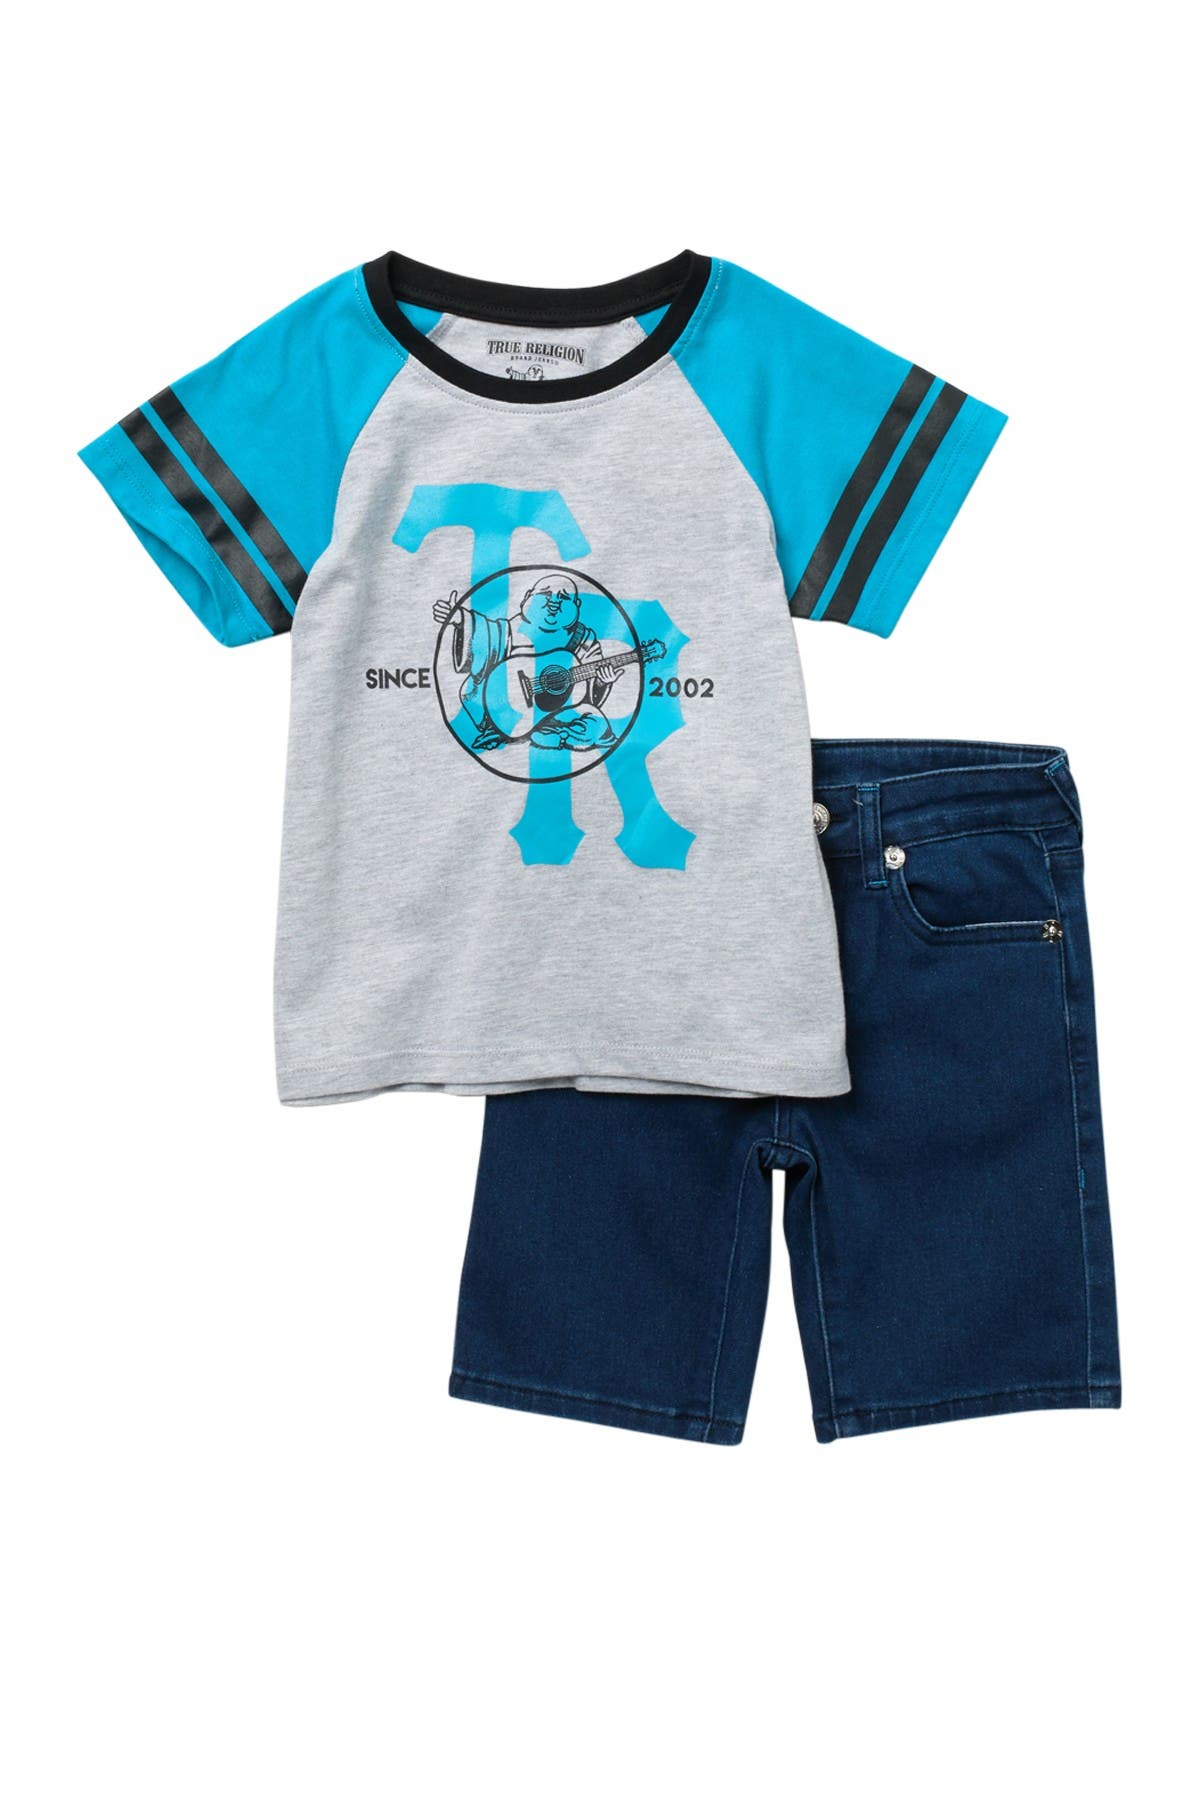 baby blue true religion shirt